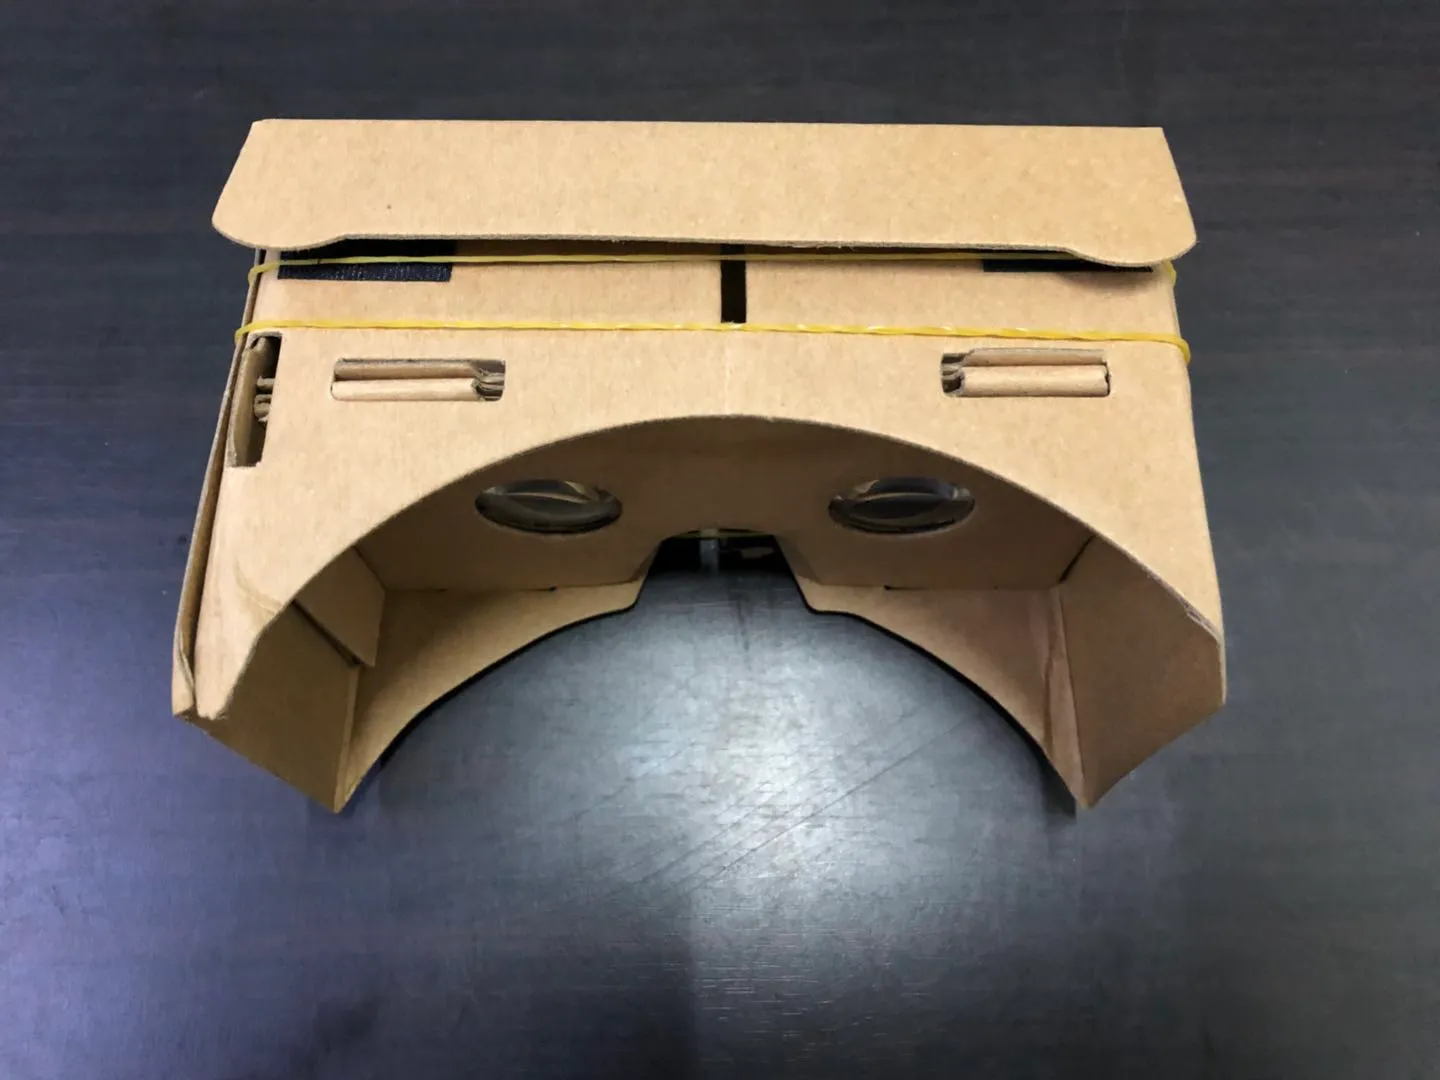 MODELOS 3D GRATUITOS MODELOS 3D VISTOS VR VR DIY Google Cardboard Telefone celular Realidade virtual de papelão não oficial VR Toolkit 3D Glasses CCA1785 B-XY